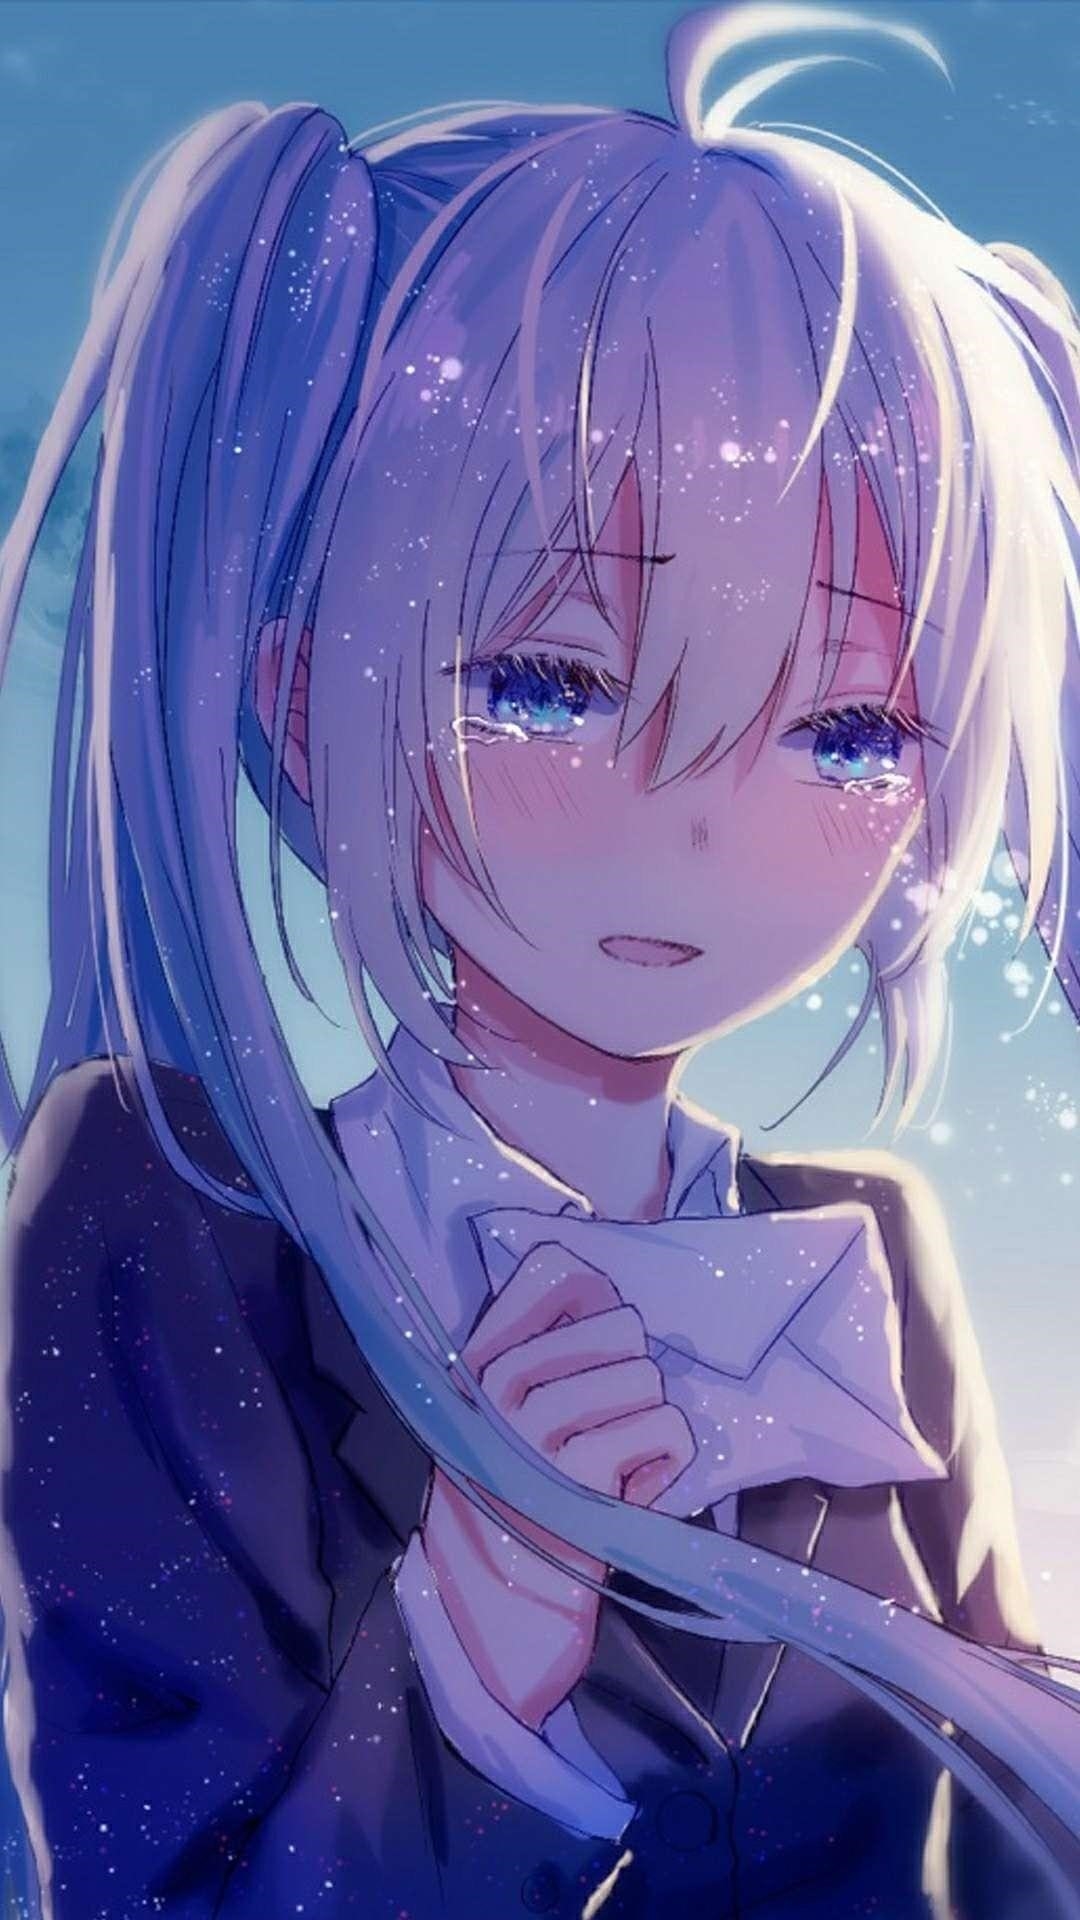 Hình anime khóc dưới mưa thể hiện sự cảm xúc đau buồn và tuyệt vọng trong trái tim nhân vật, tạo nên một hình ảnh đầy xúc động và đẹp mắt.